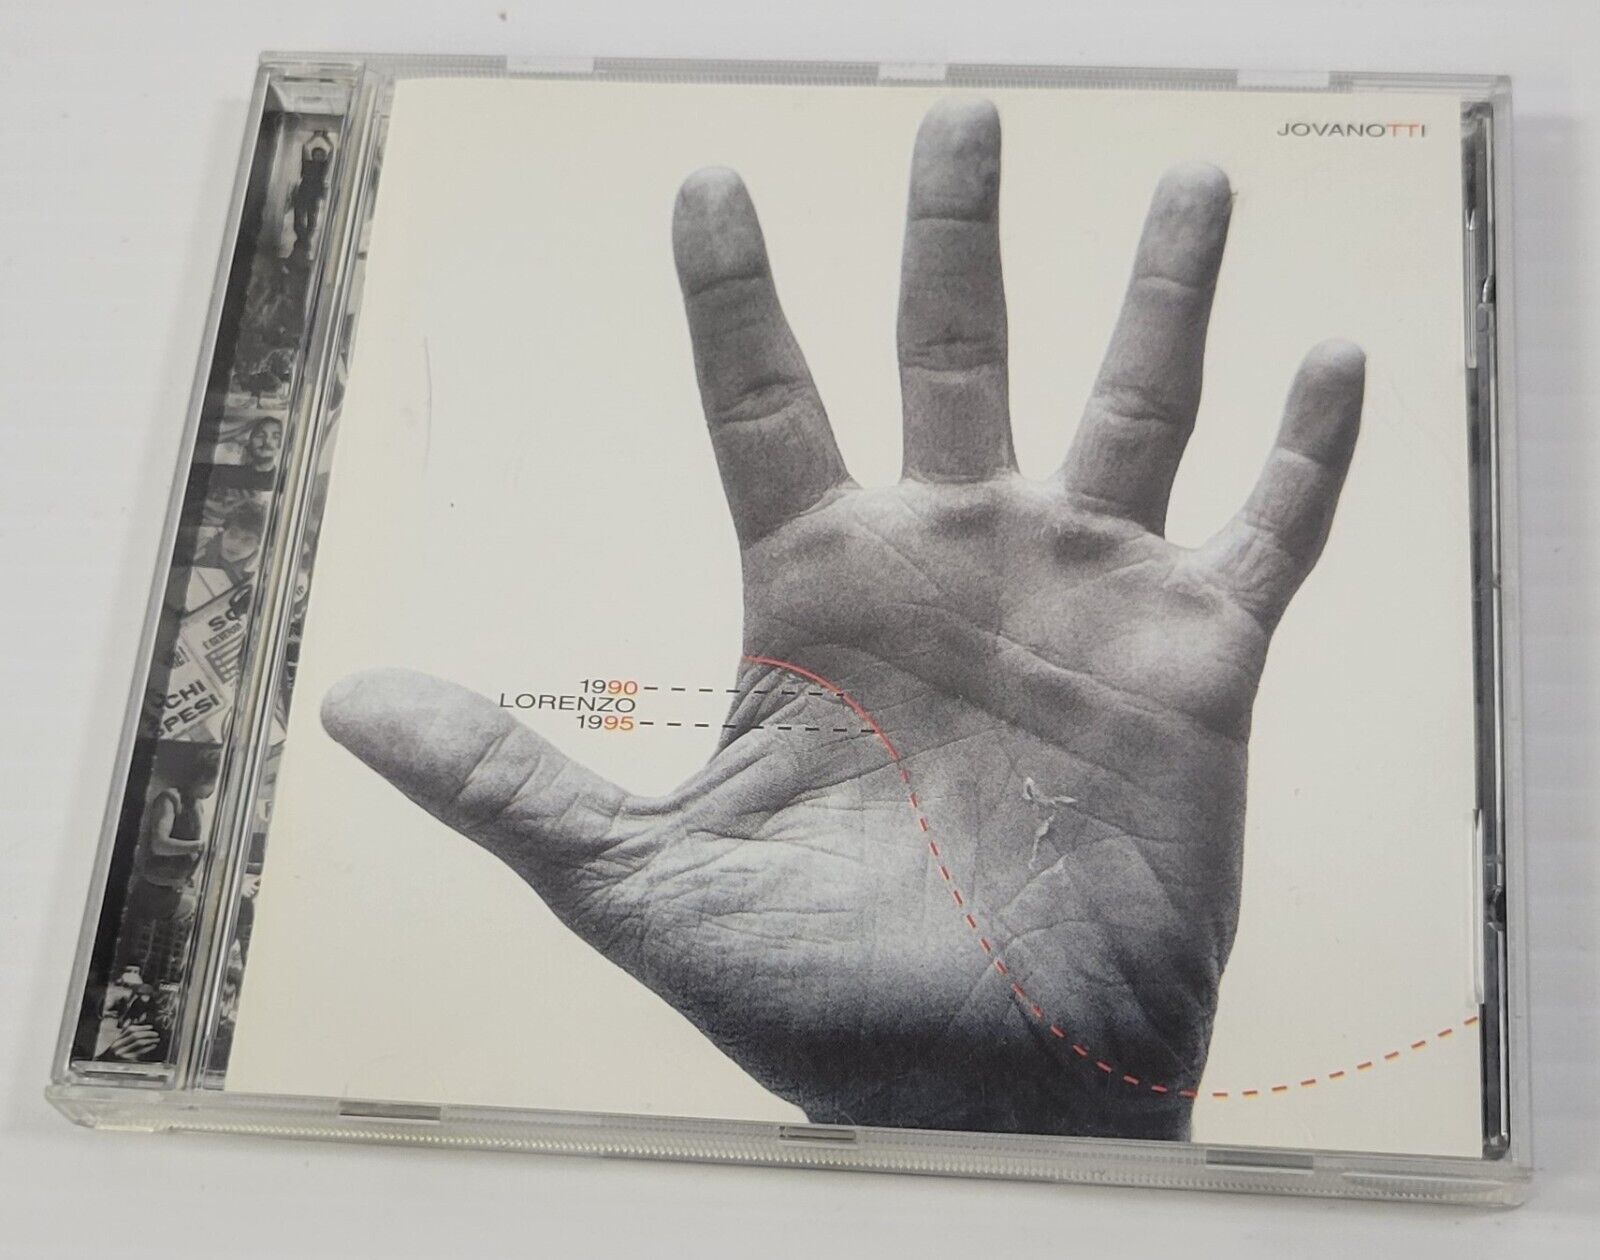 M) Lorenzo 1990-1995 by Jovanotti (Lorenzo Cherubini) (CD, 1995 Polygram Italia)